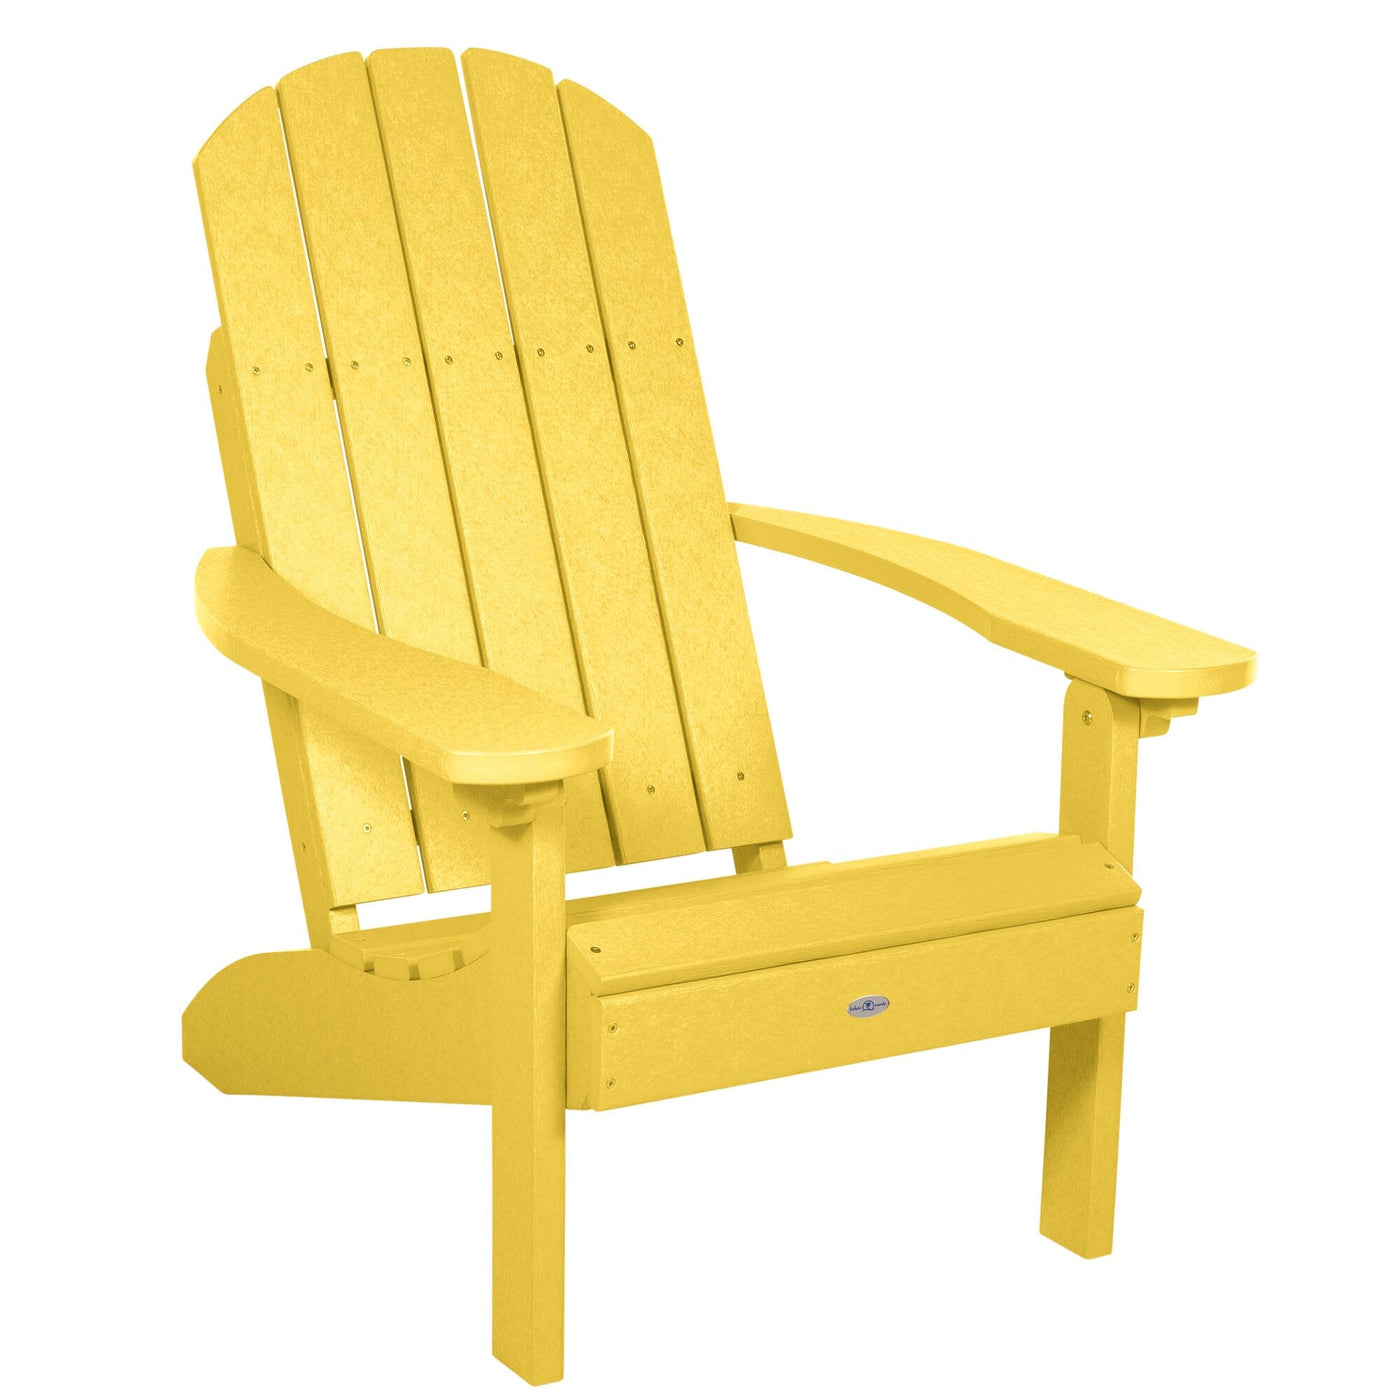 Cape Classic Adirondack Chair Adirondack Chairs Bahia Verde Outdoors Sunbeam Yellow 